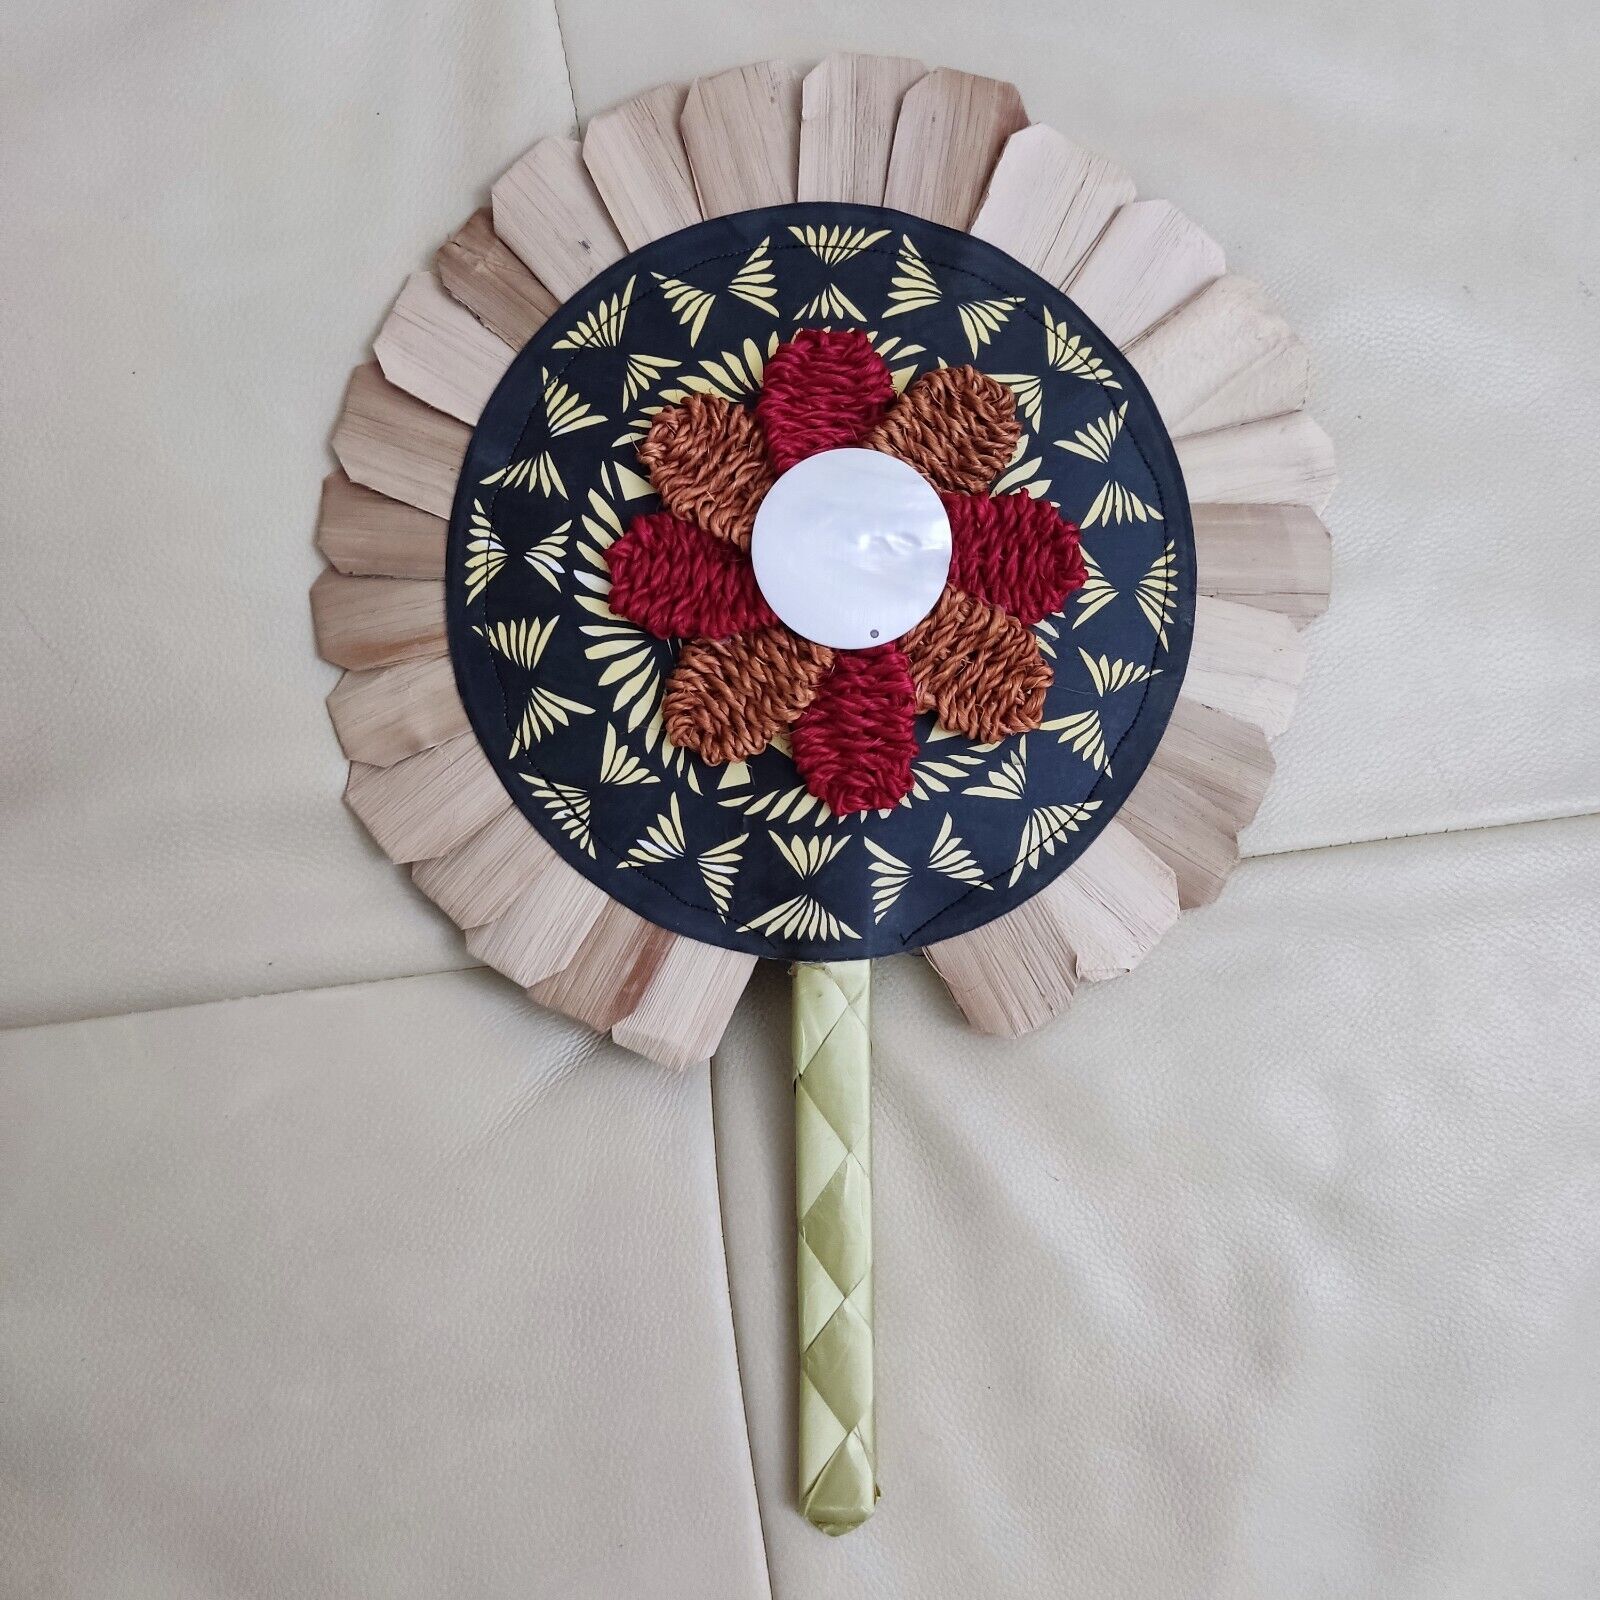 Tongan Handmade Fan